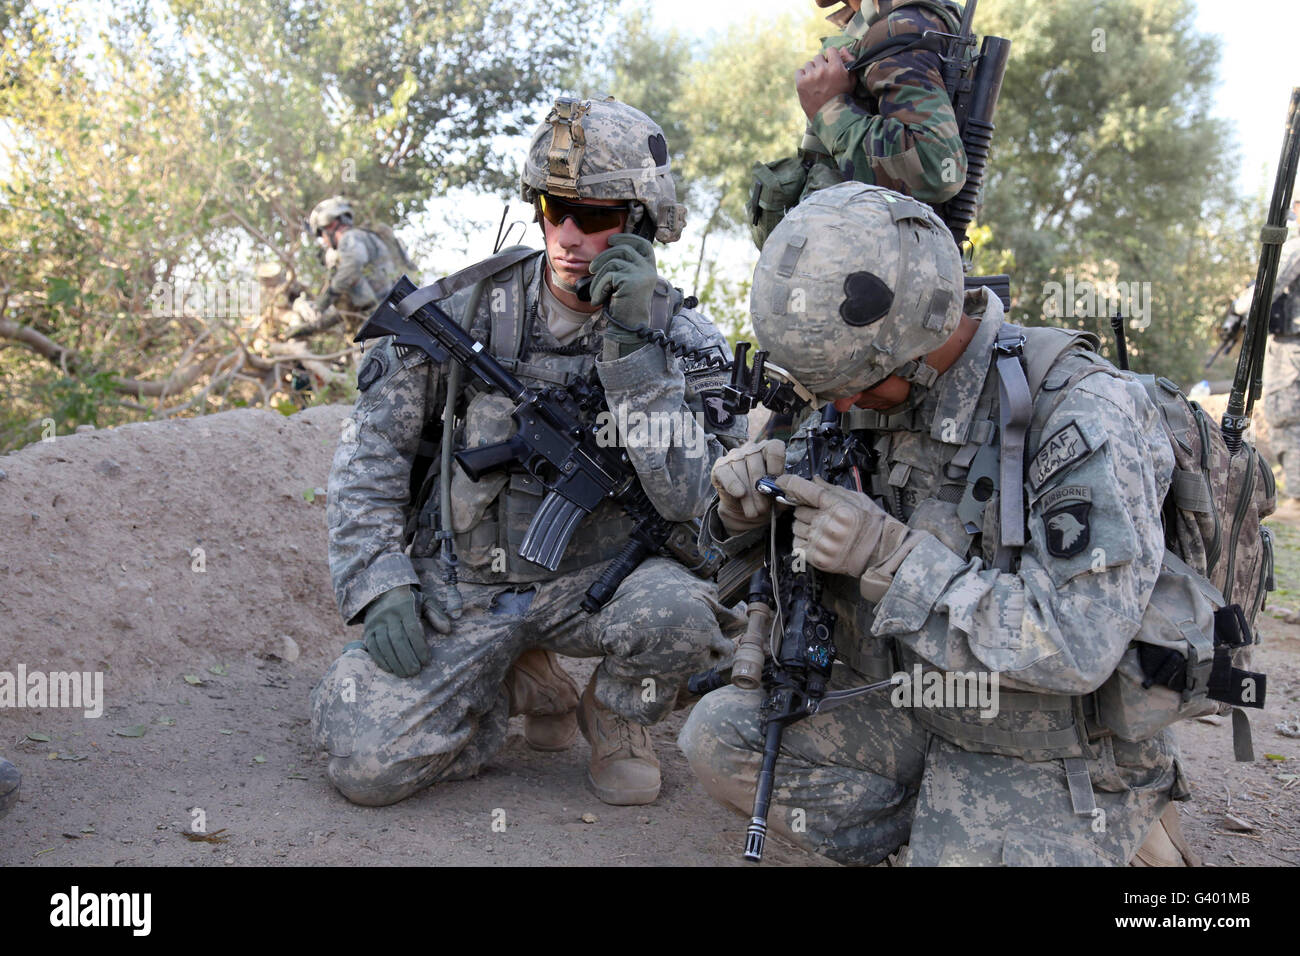 Soldat de l'armée américaine des radios dans son équipe. Banque D'Images